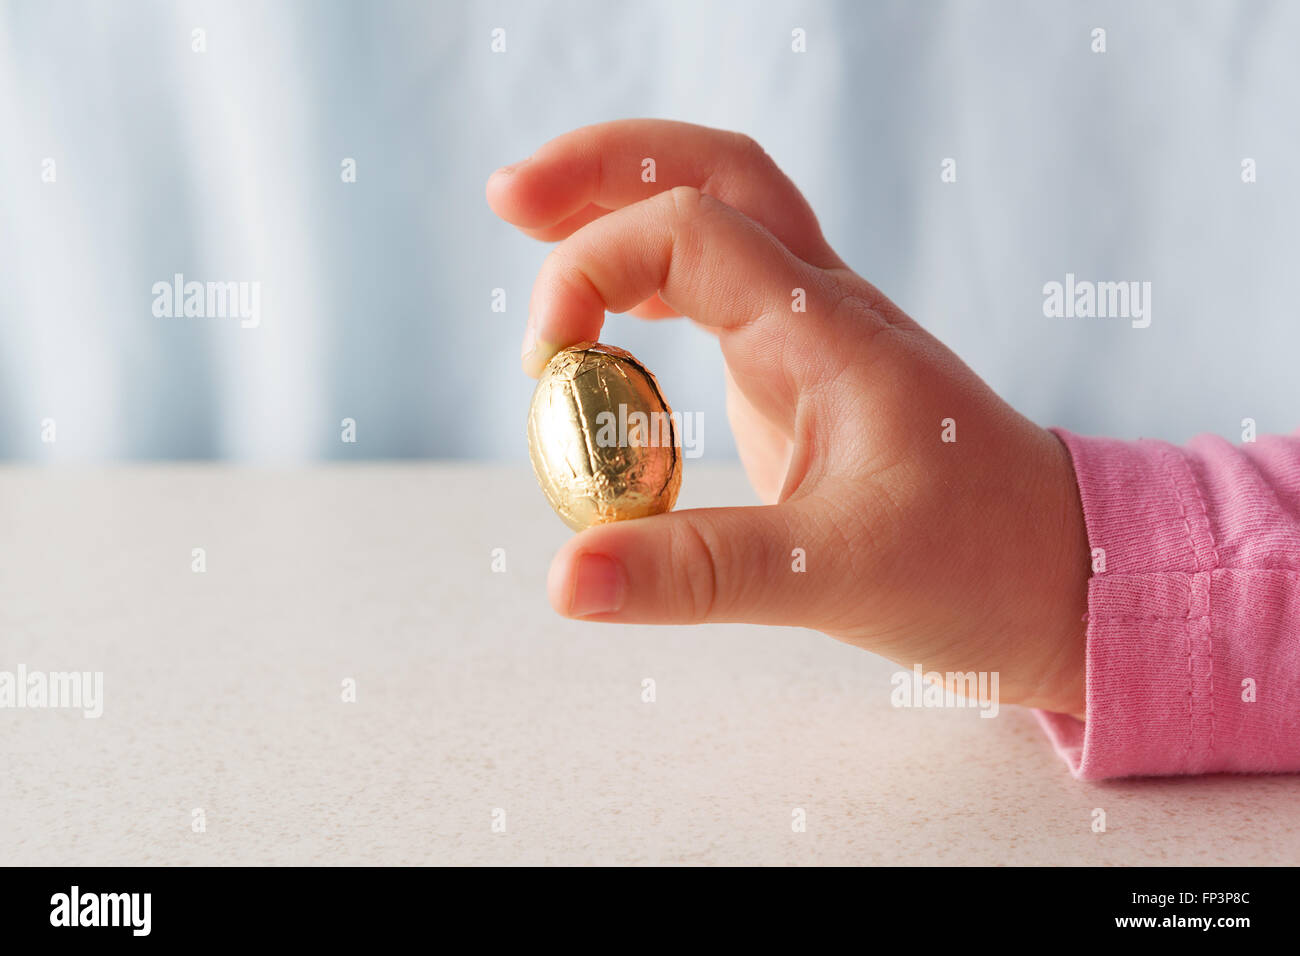 La main de l'enfant tenant un oeuf de Pâques en chocolat emballés dans une feuille d'or entre deux doigts with copy space Banque D'Images